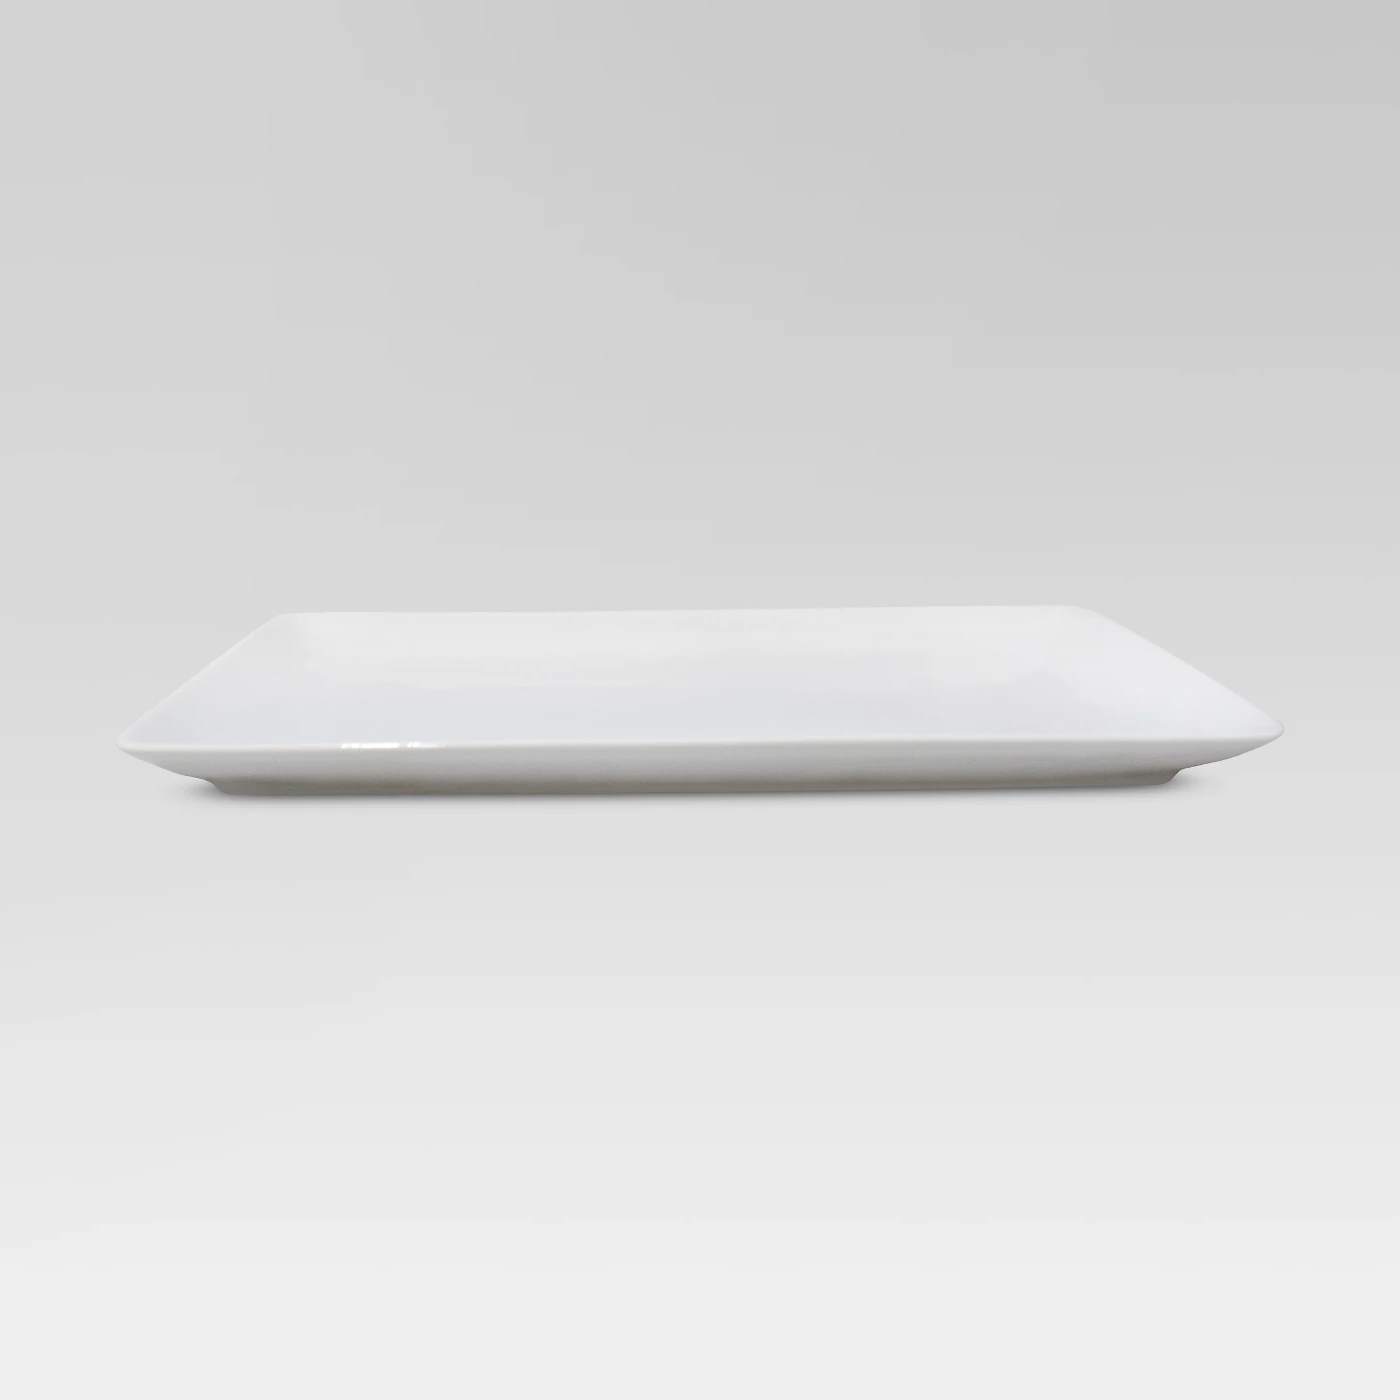 Porcelain Rectangular Platter White 9.5"x15.25" - Threshold. #whiteplatter #kintchenware #tabletop #homedecor